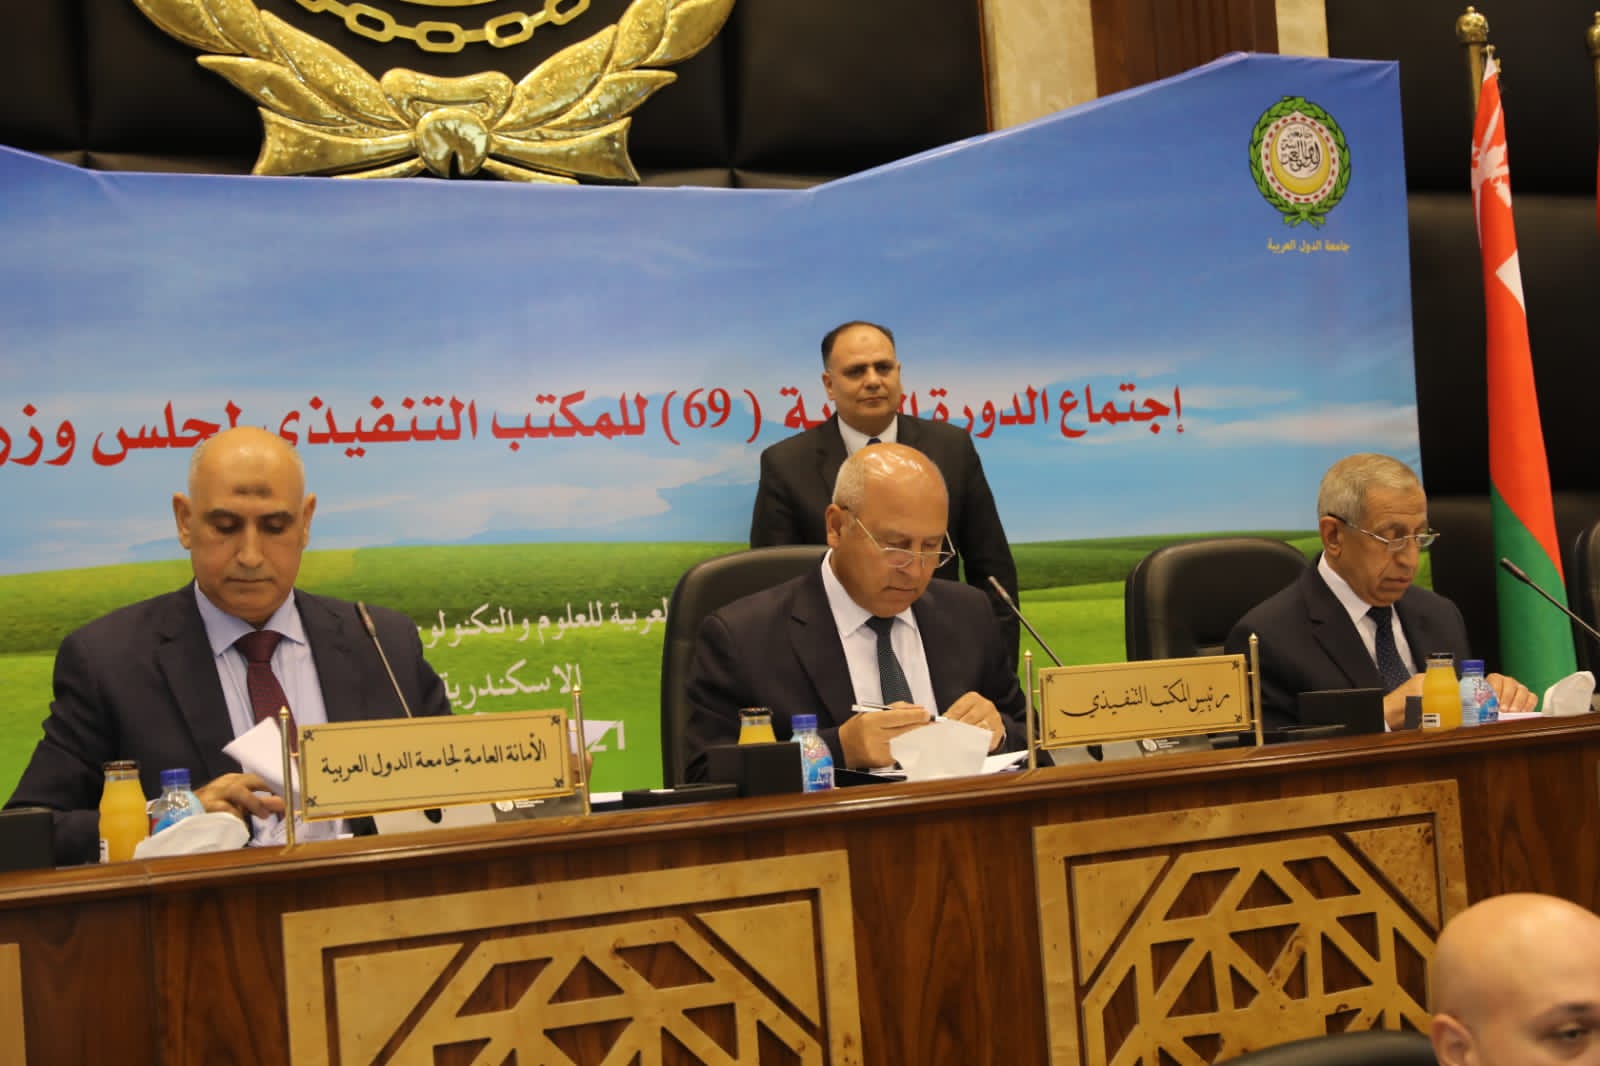 وزير النقل يترأس اجتماع الدورة العادية رقم (69) للمكتب التنفيذي لمجلس وزراء النقل العرب